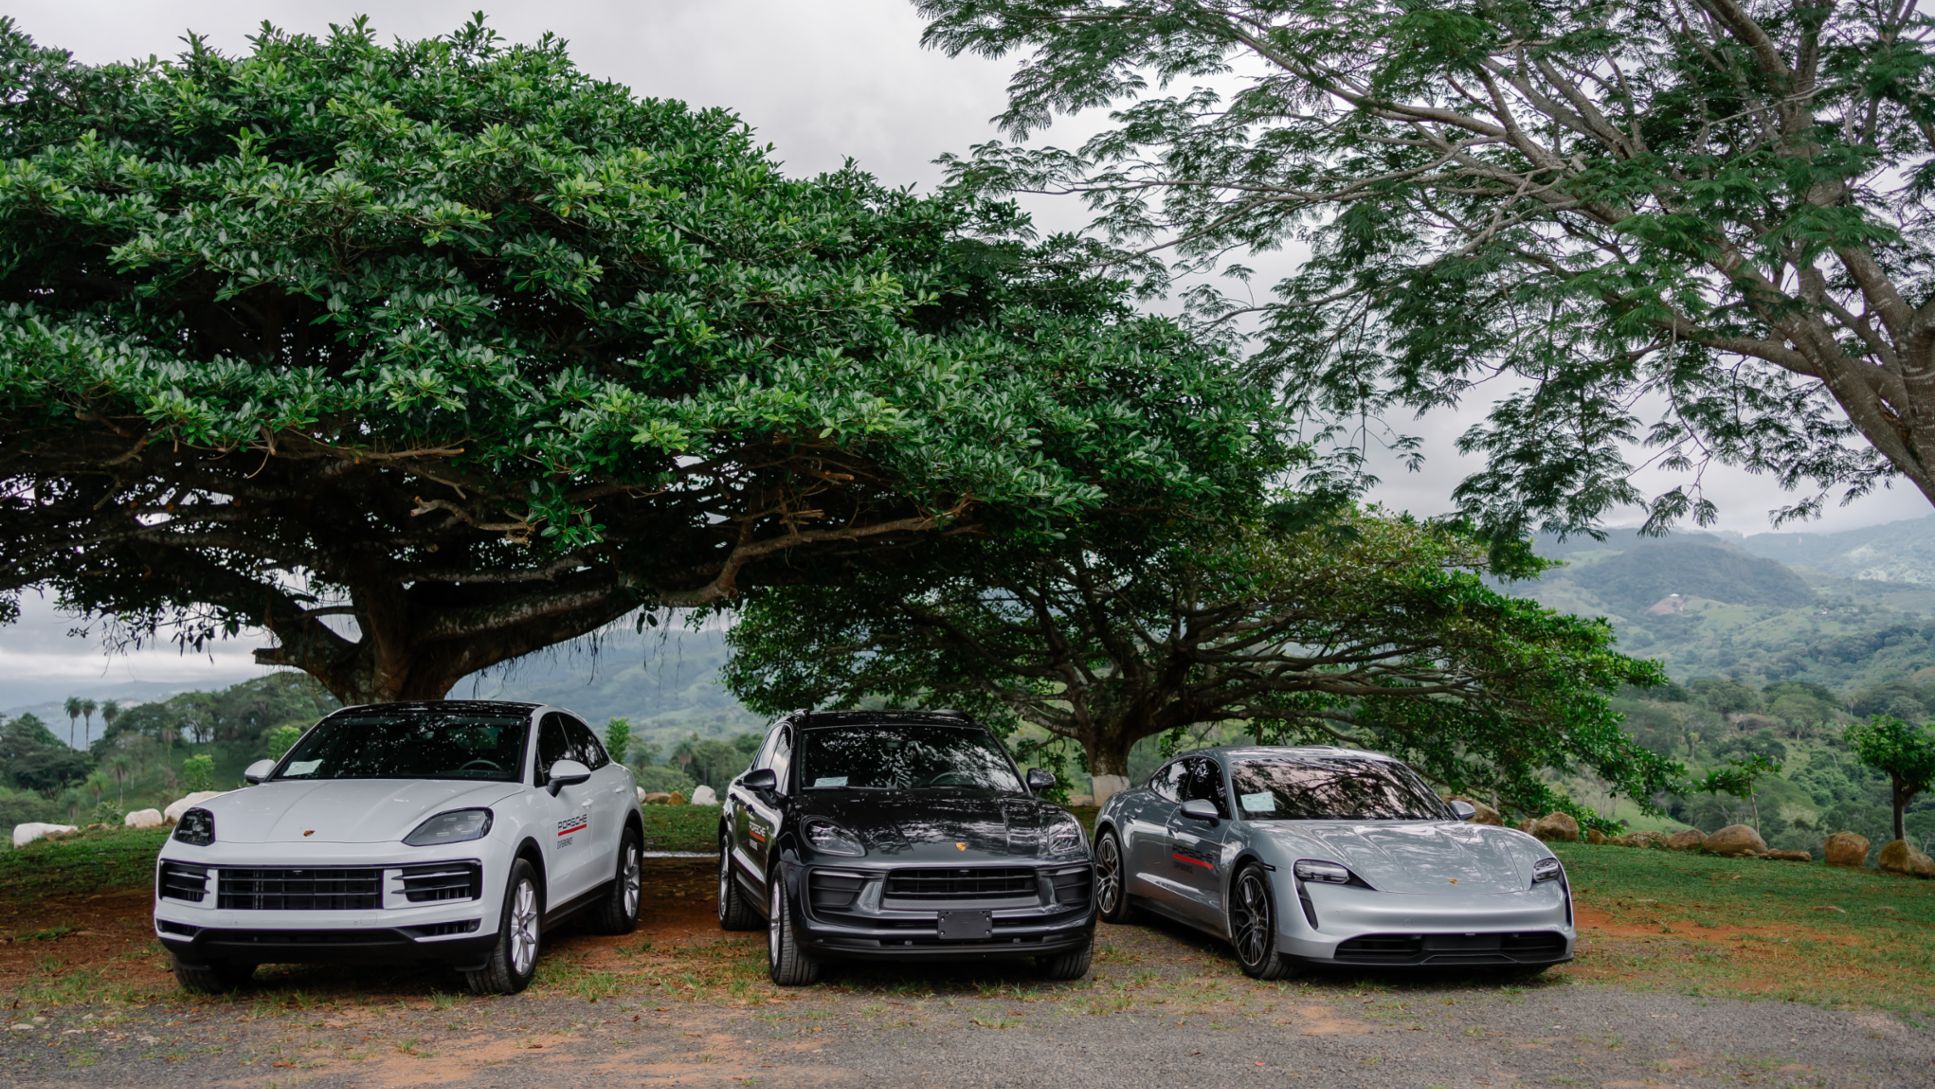  Macan, Cayenne y Taycan el primer vehículo 100% eléctrico de Porsche fueron los modelos más vendidos en Costa Rica.